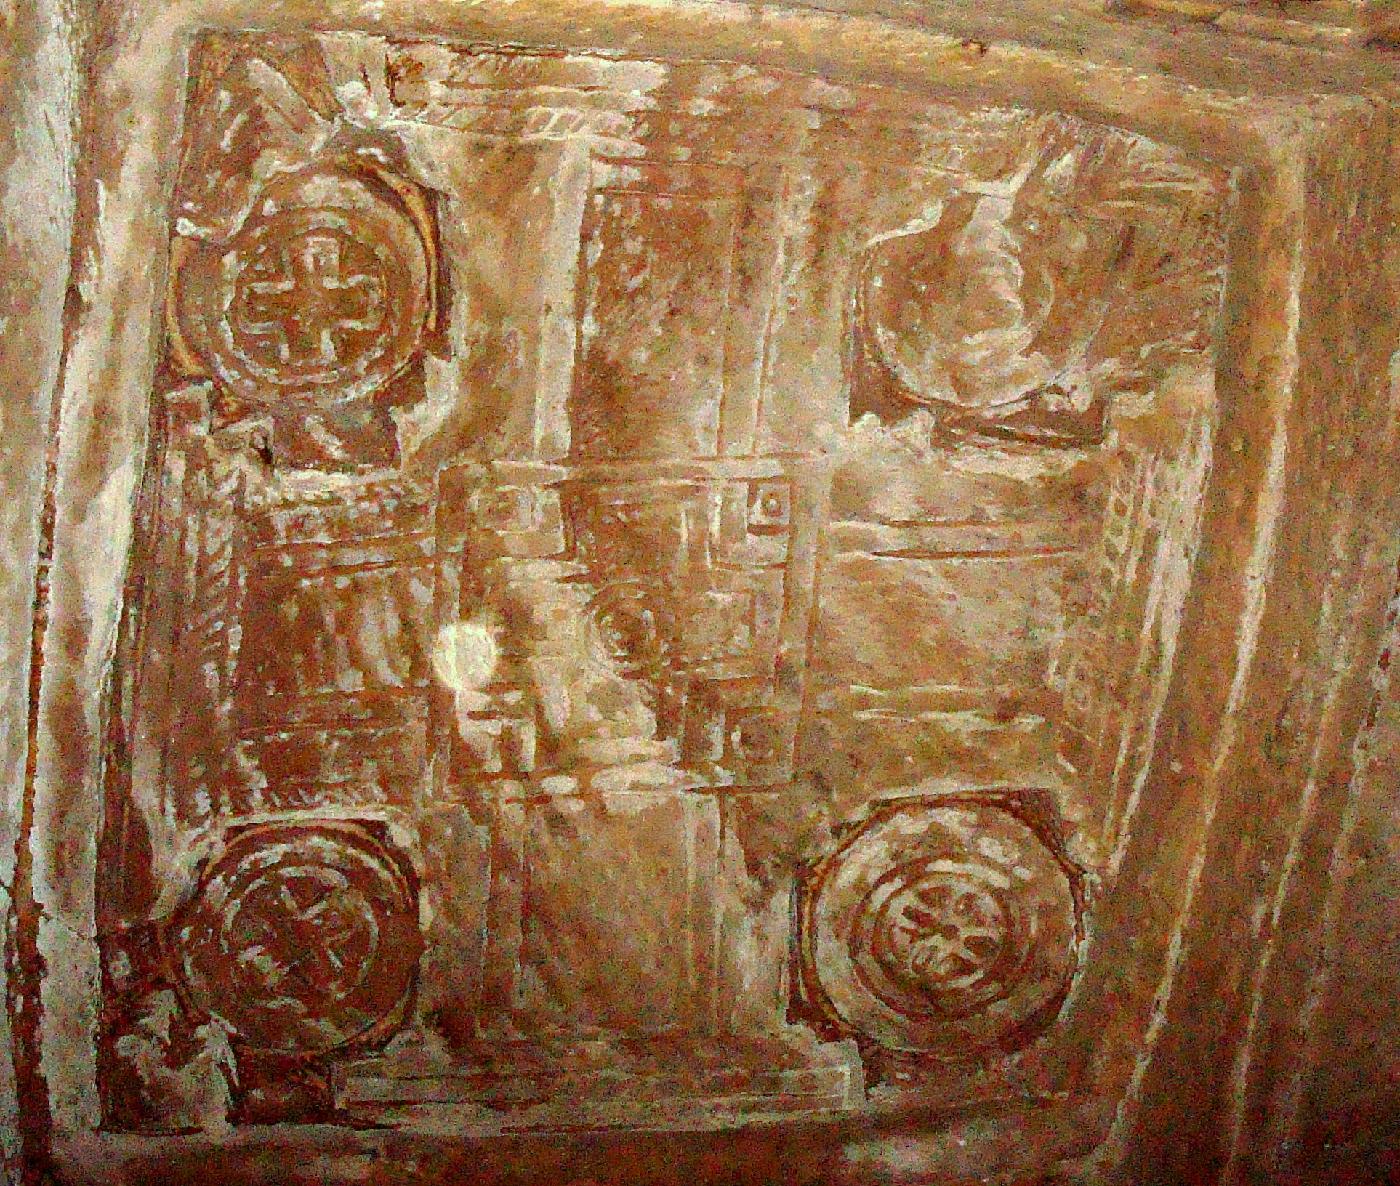 DSC031100.jpg - Autre dtail du plafond avec une croix grecque